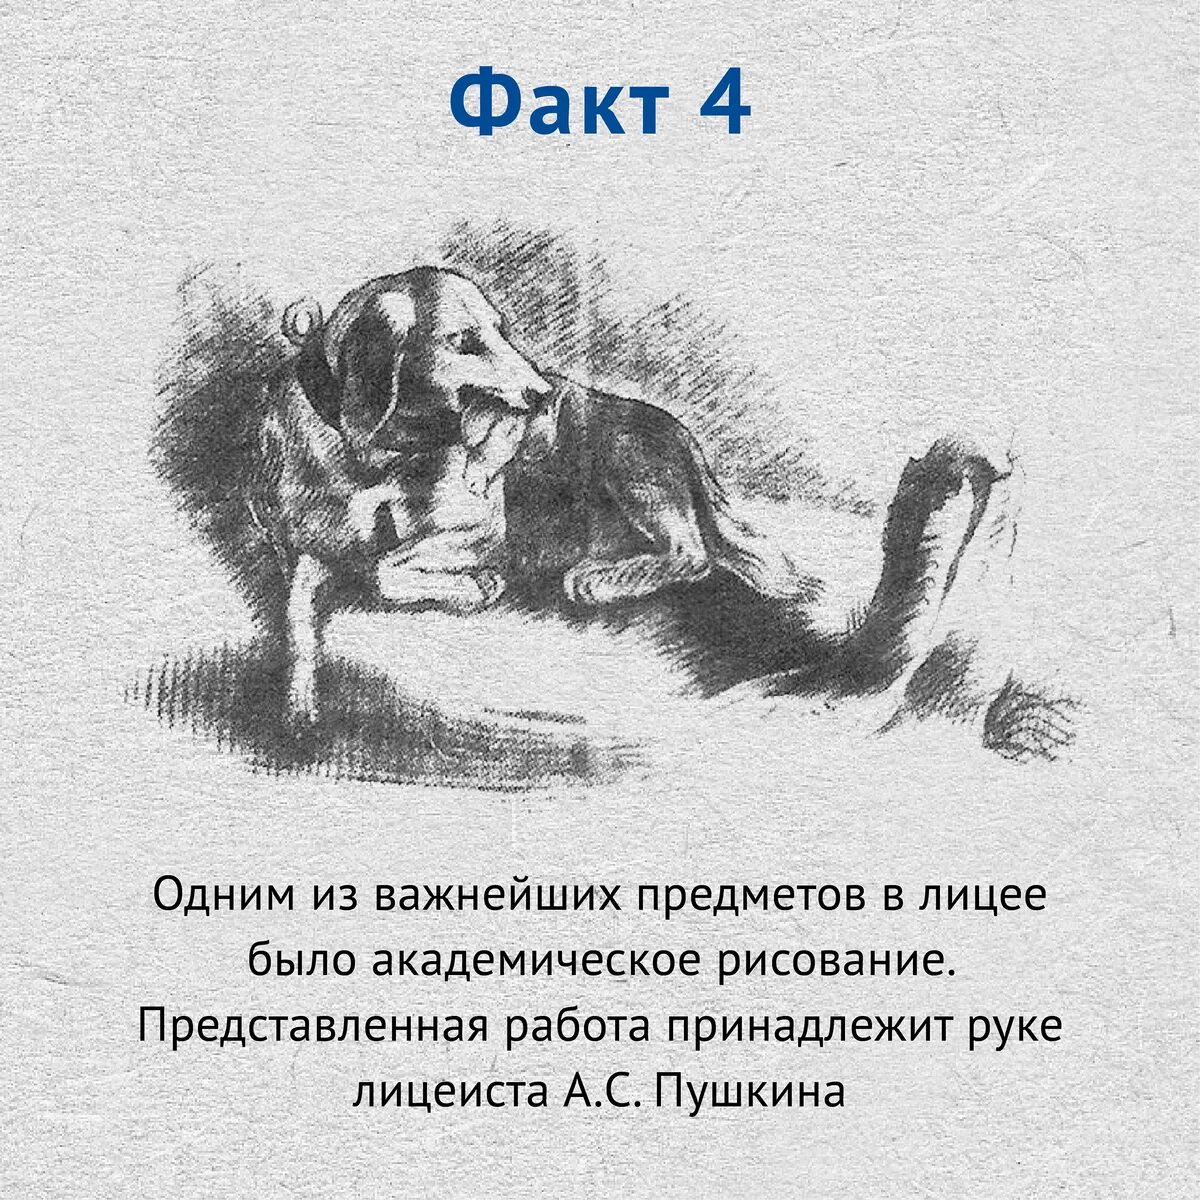 5 Интересных фактов о Пушкине. Интересные факты о жизни Пушкине 4 класс. Интересные факты опугкине.